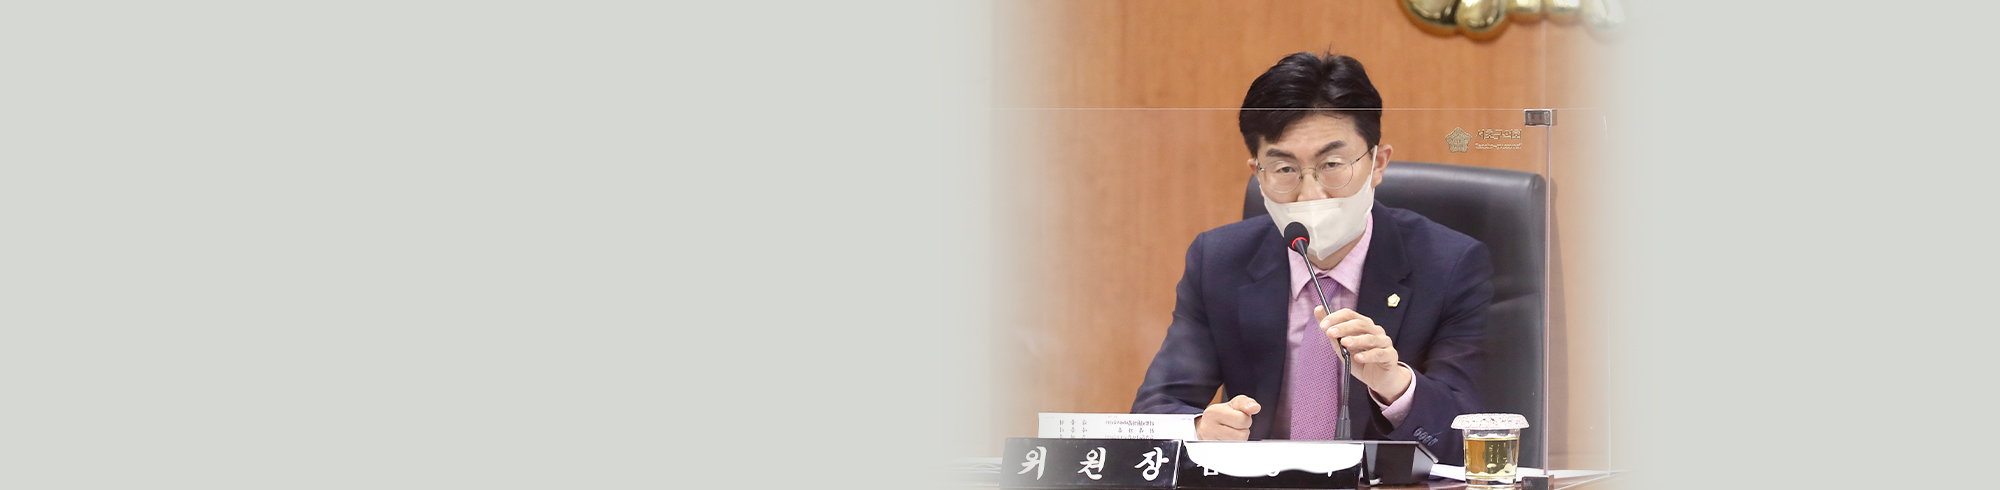 서초구의회 김성주 의원 비주얼 이미지입니다.